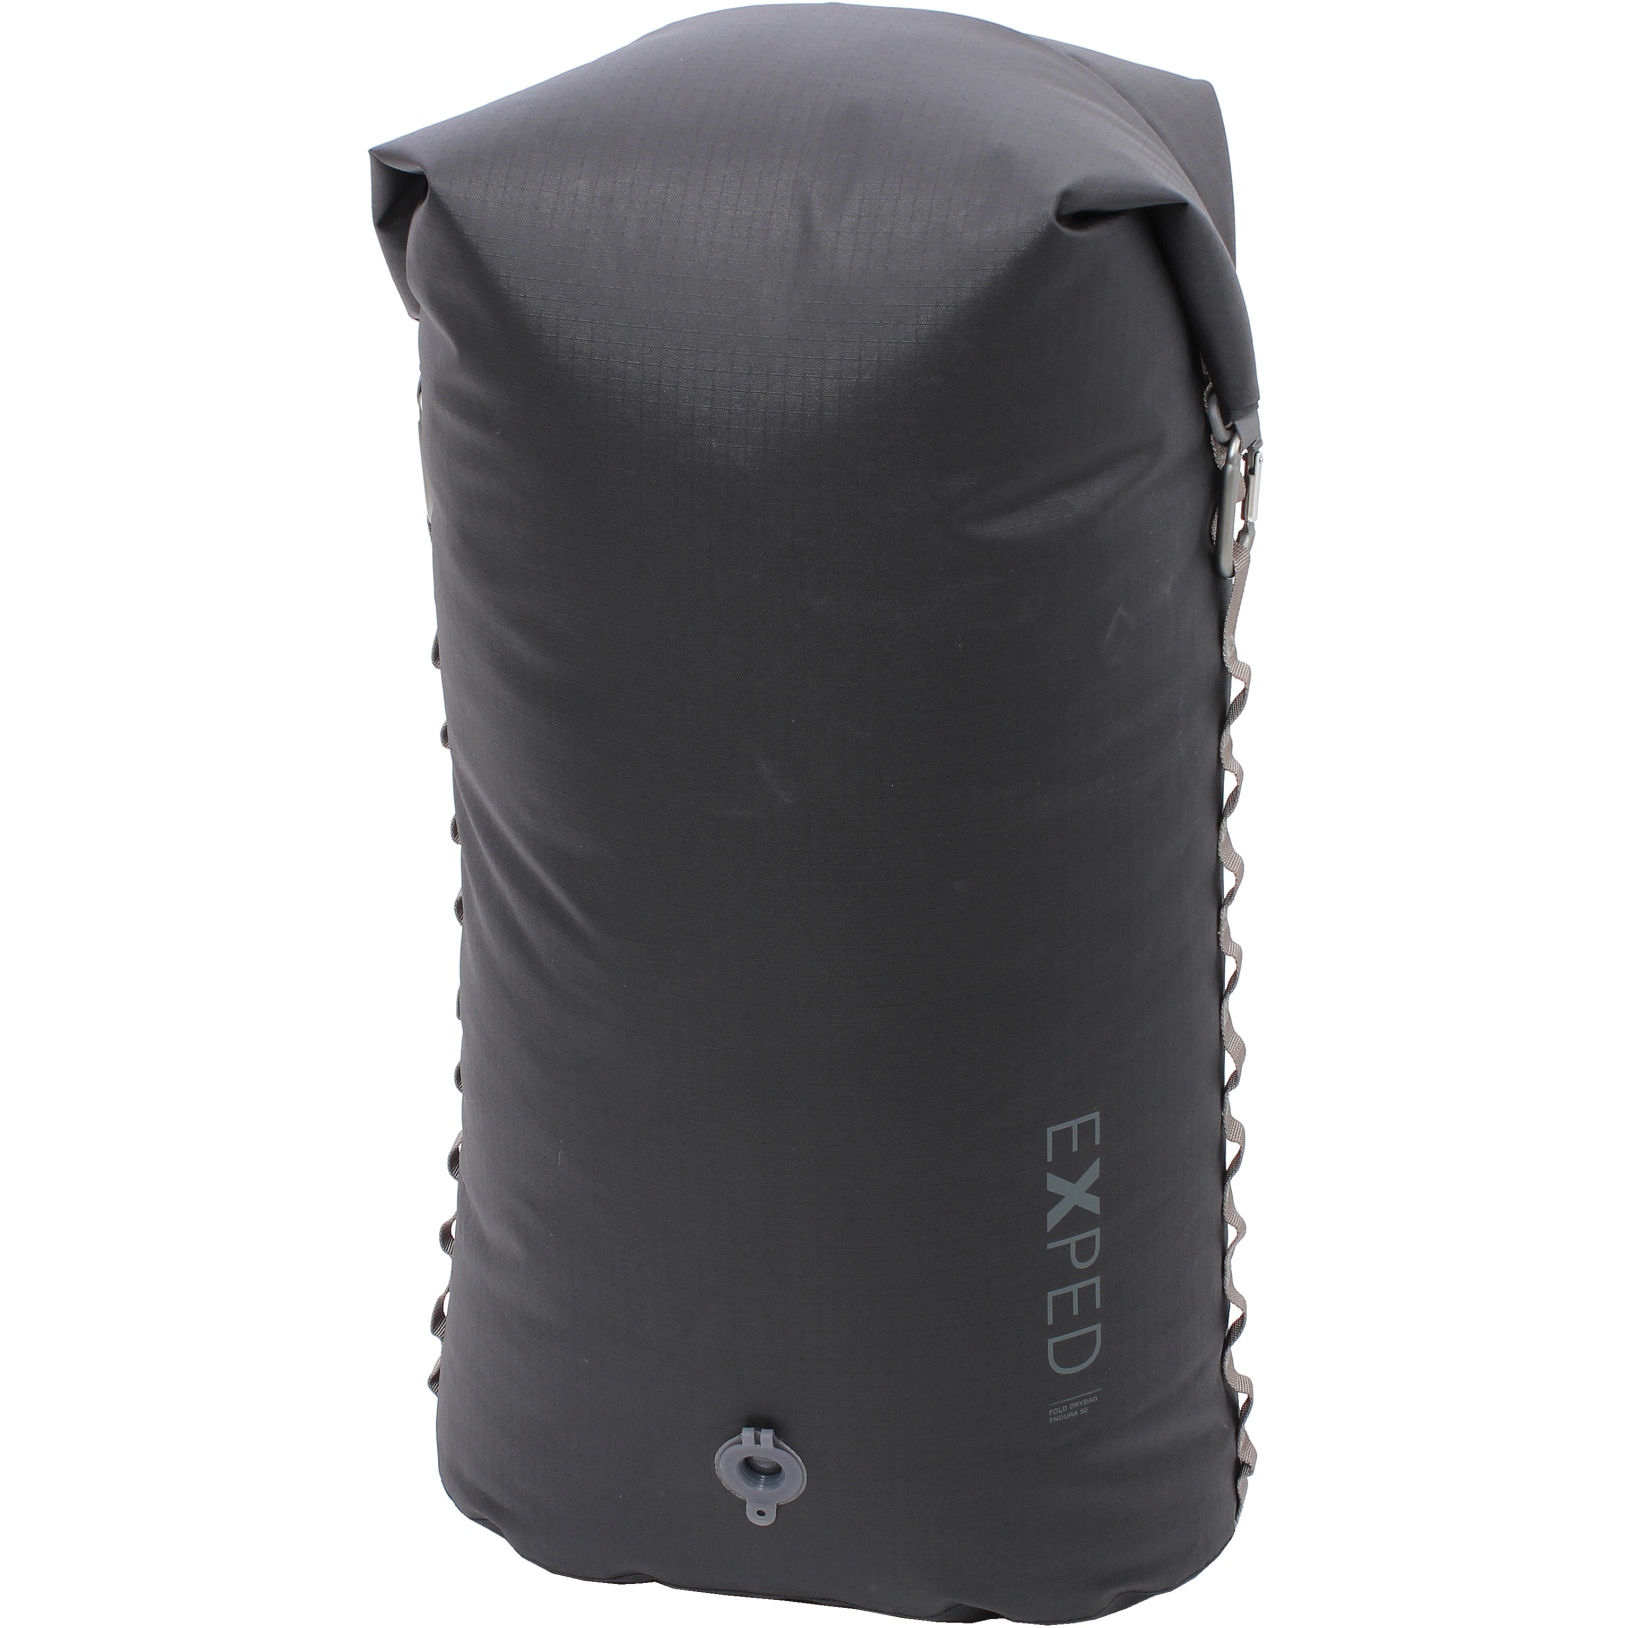 Bild von Exped Fold Drybag Endura Packsack - 50L - schwarz